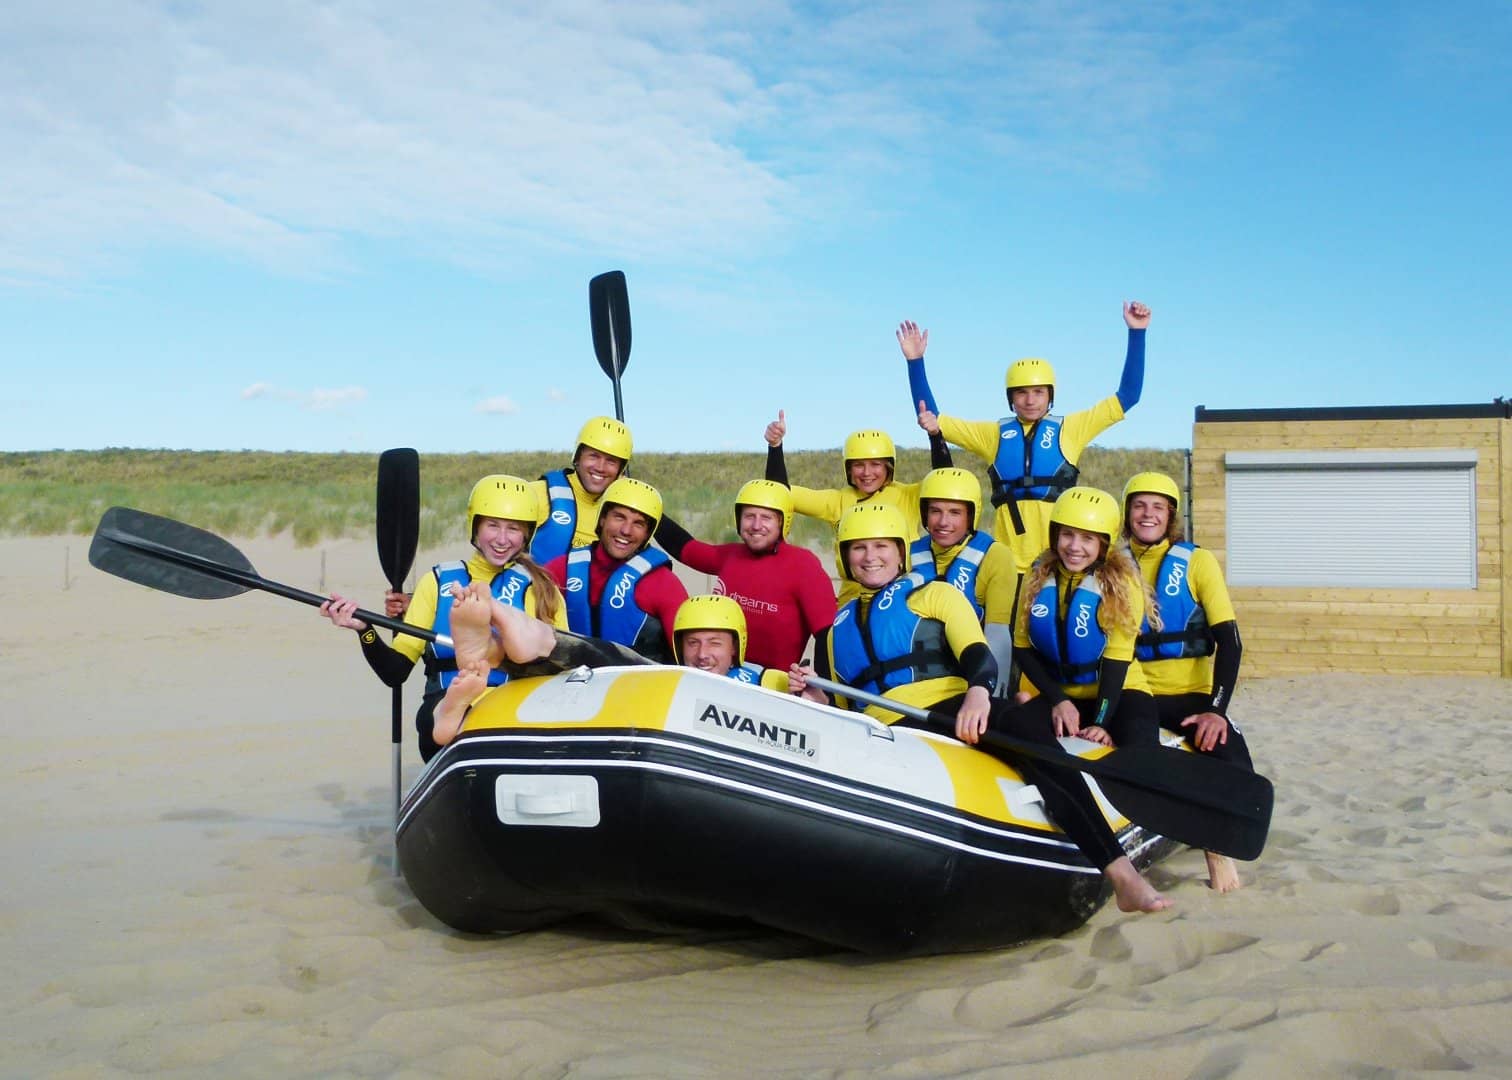 foto van een groep enthousiaste mensen die gaan raften in wetsuits en met gele helmen en roeispanen in een rubberen boot op het strand van Ter Heijde in het Westland